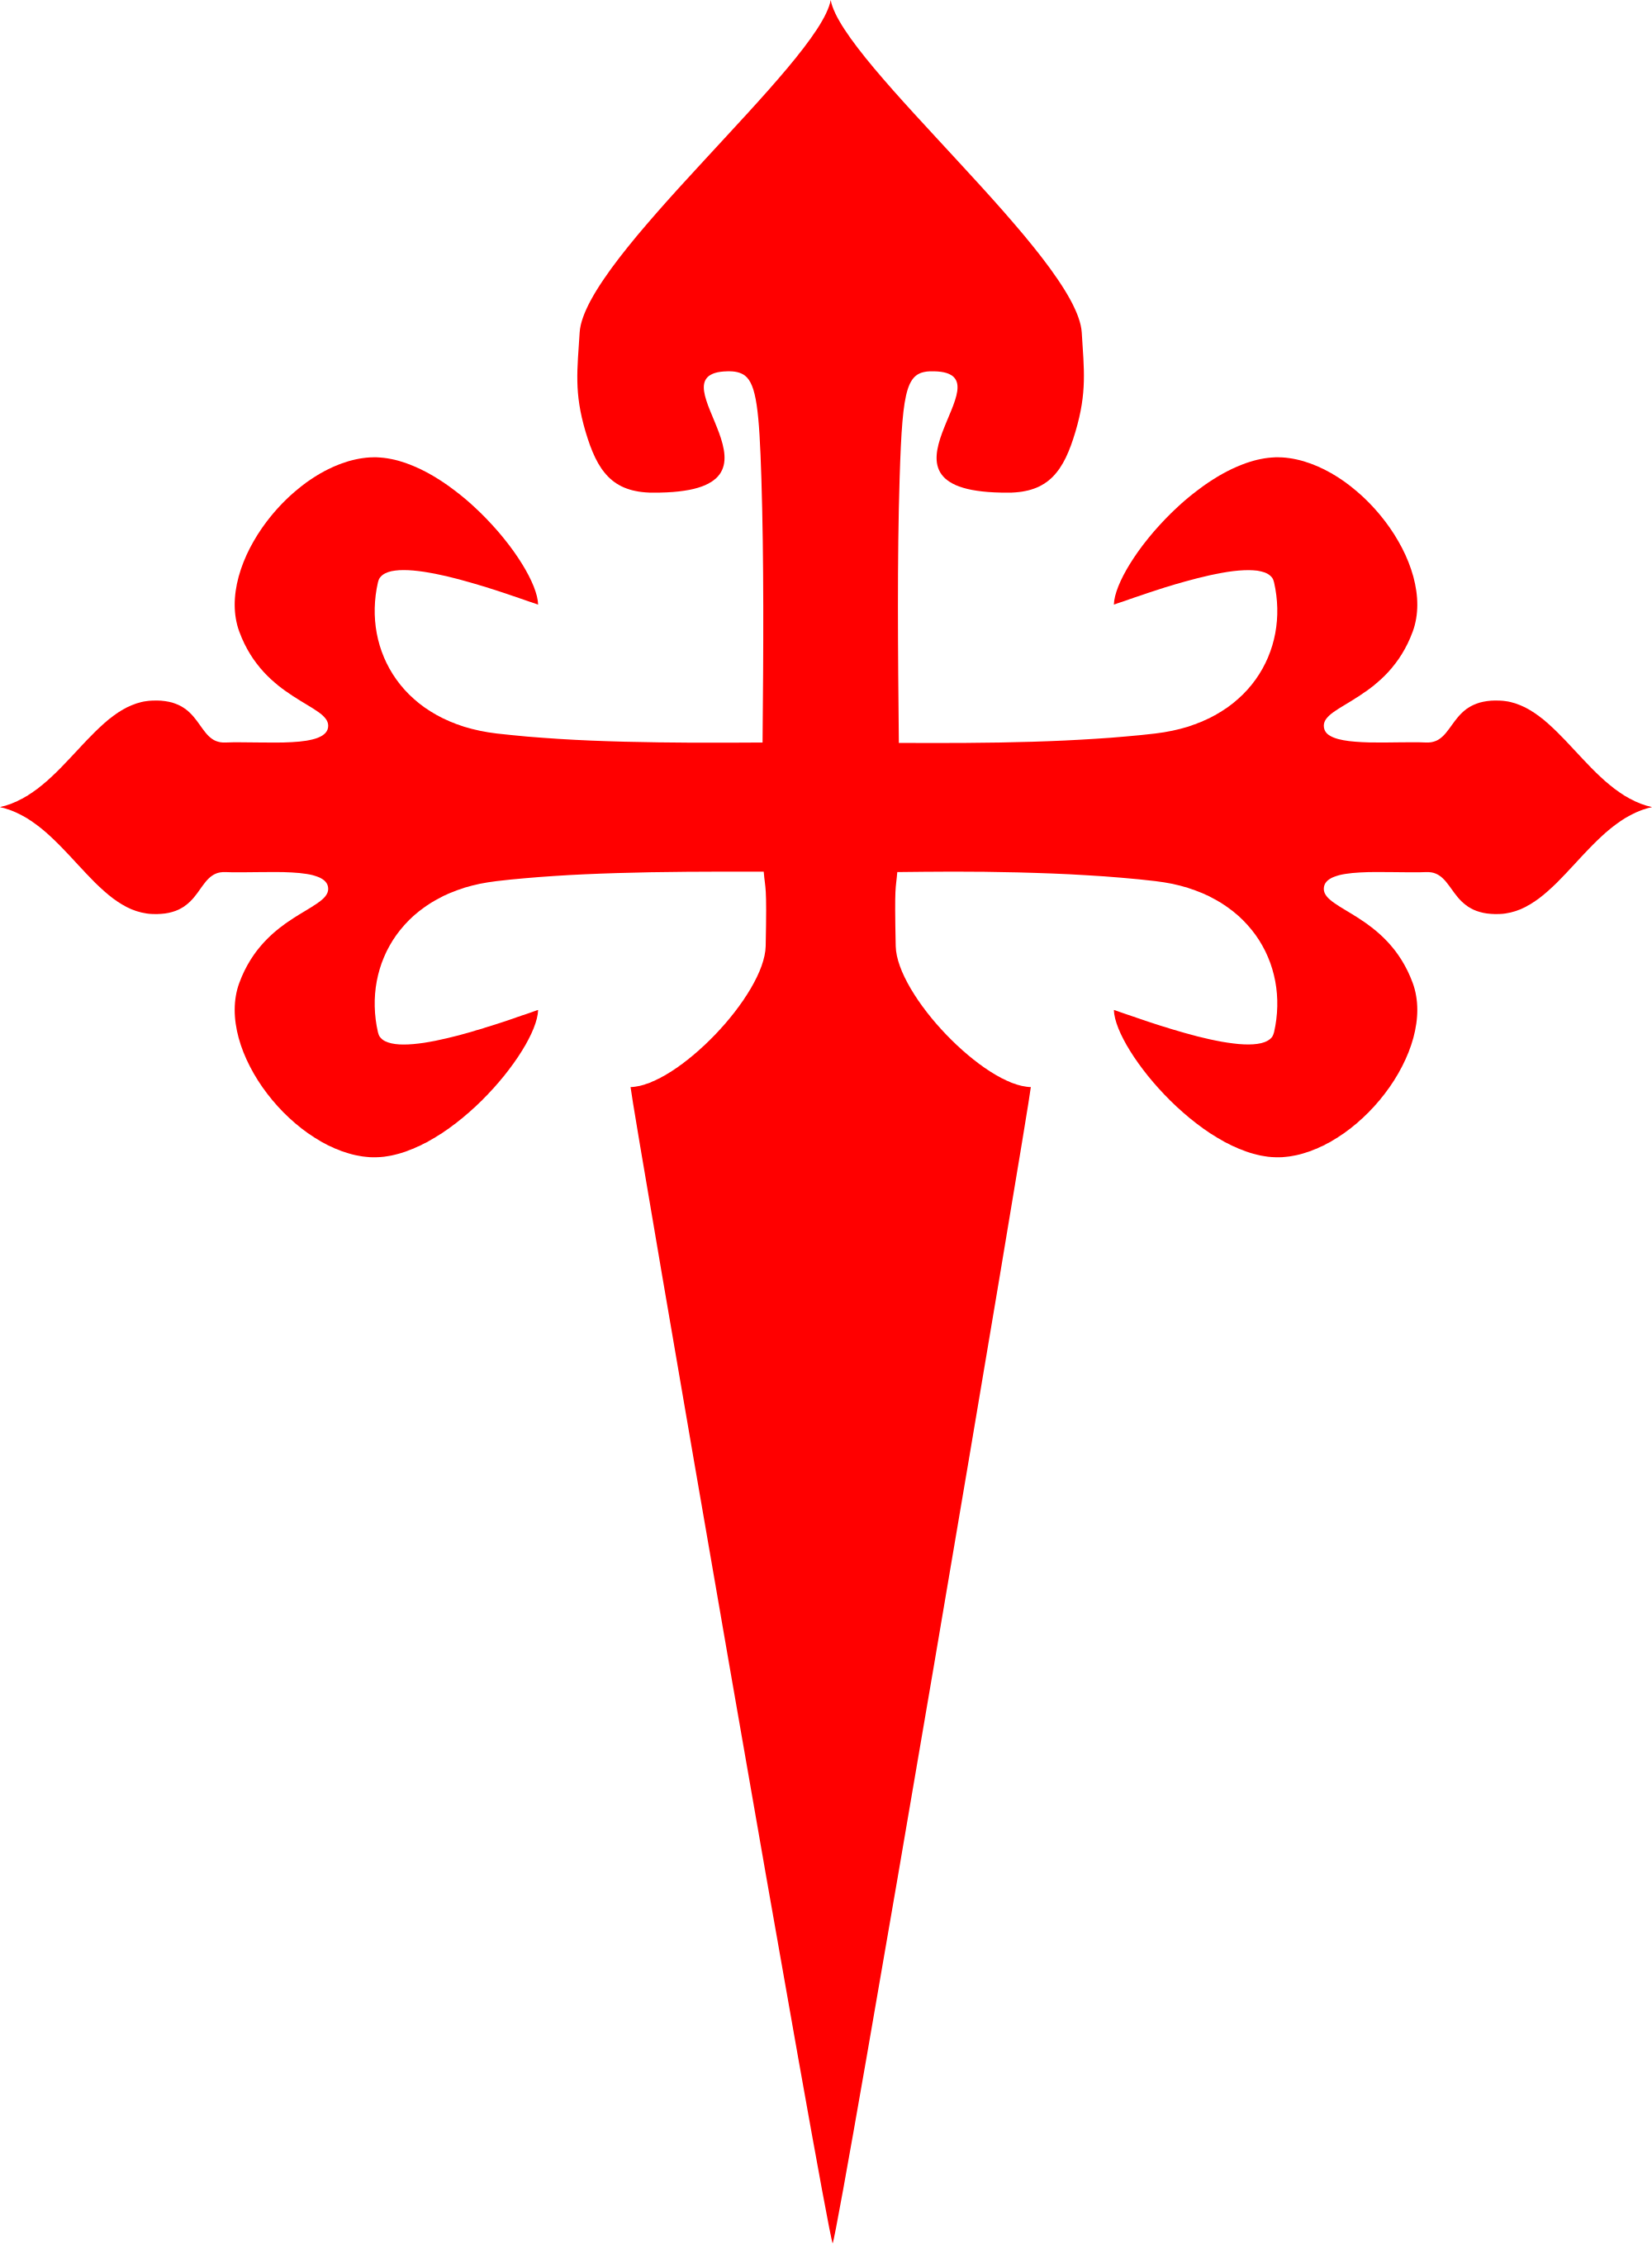 sword clipart cross